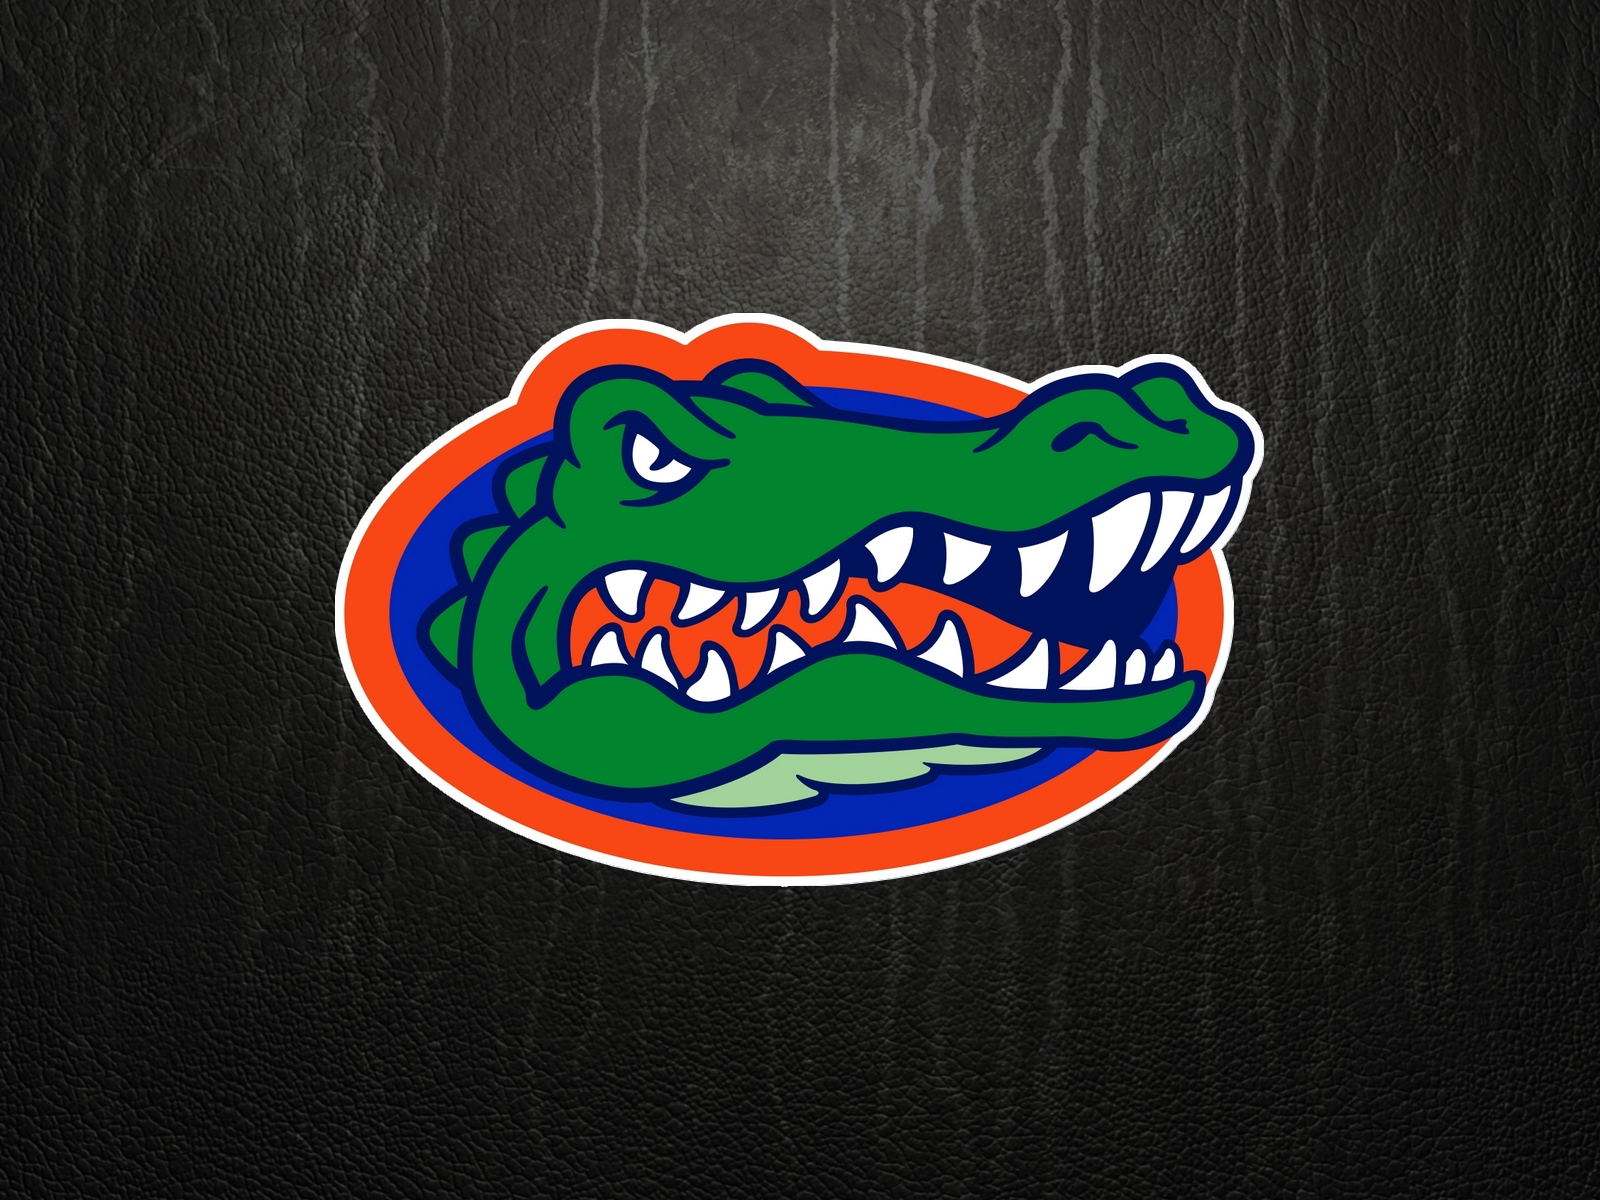 Get Florida Gators Logo Black Background Images